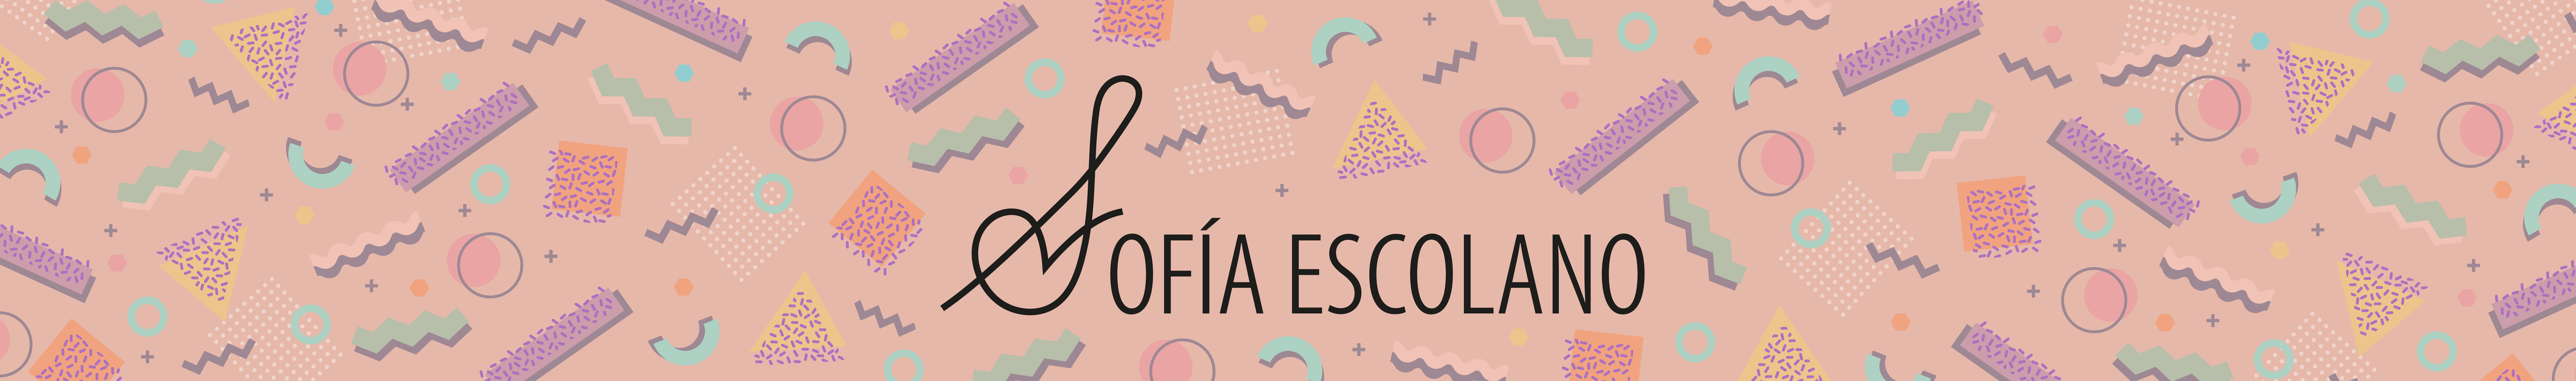 Sofia Escolano Gómez's profile banner